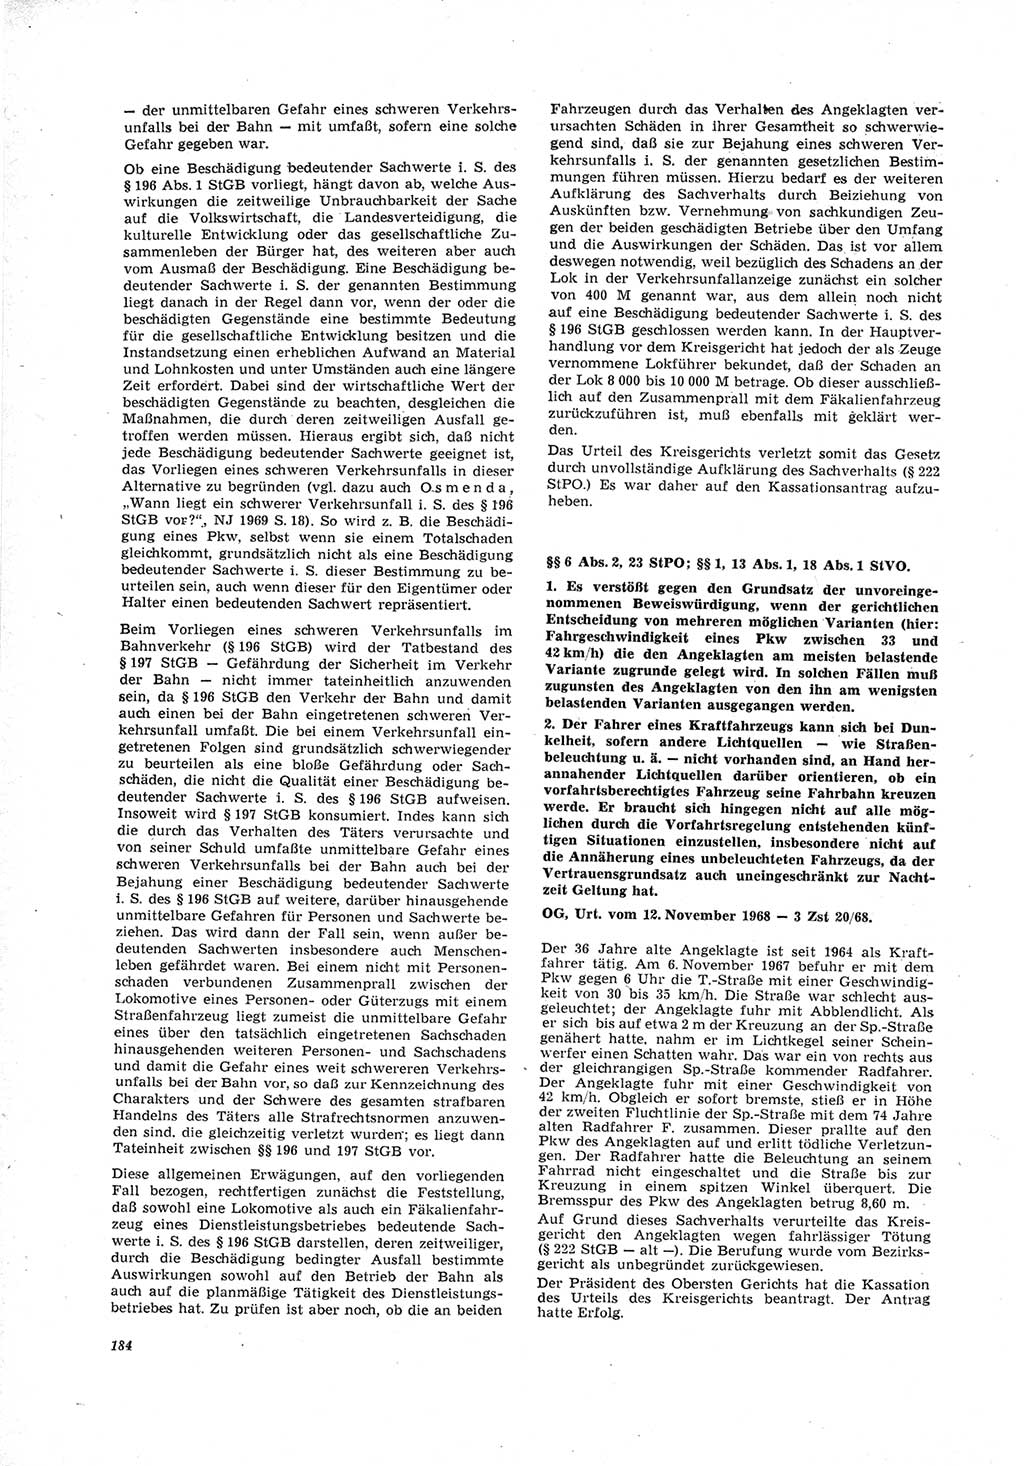 Neue Justiz (NJ), Zeitschrift für Recht und Rechtswissenschaft [Deutsche Demokratische Republik (DDR)], 23. Jahrgang 1969, Seite 184 (NJ DDR 1969, S. 184)